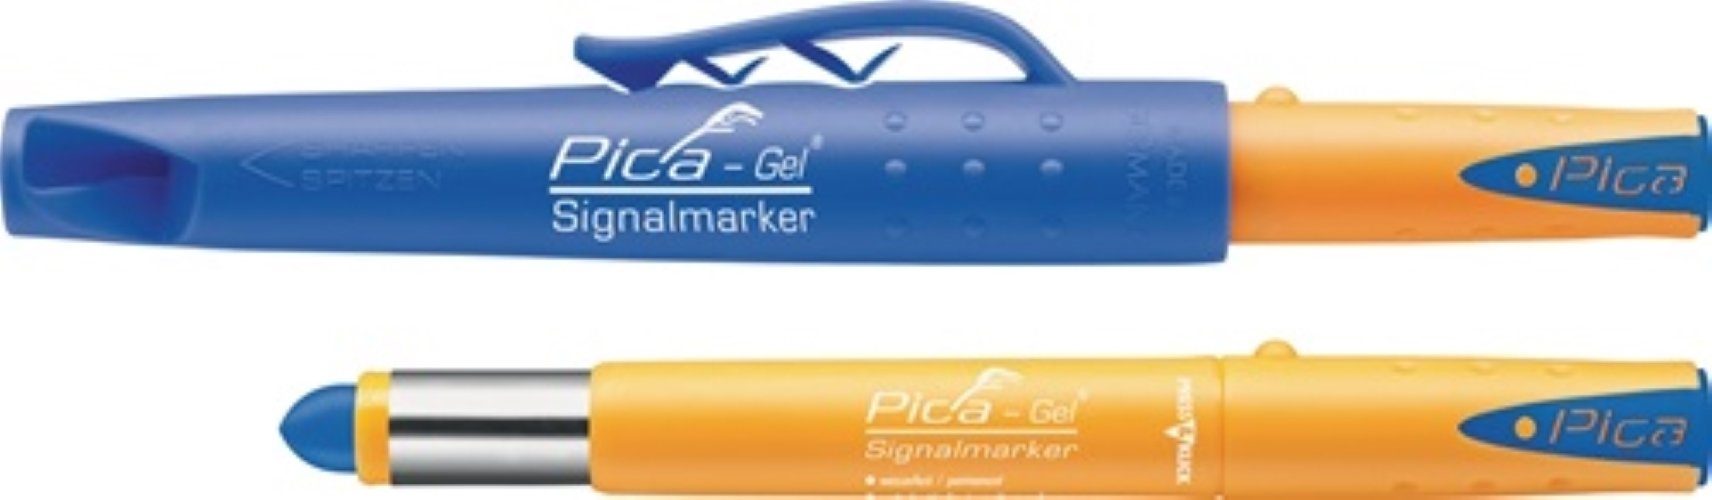 Pica Marker Signalmarker Pica-Gel blau wasserfest PICA markiert auf glatten und ra